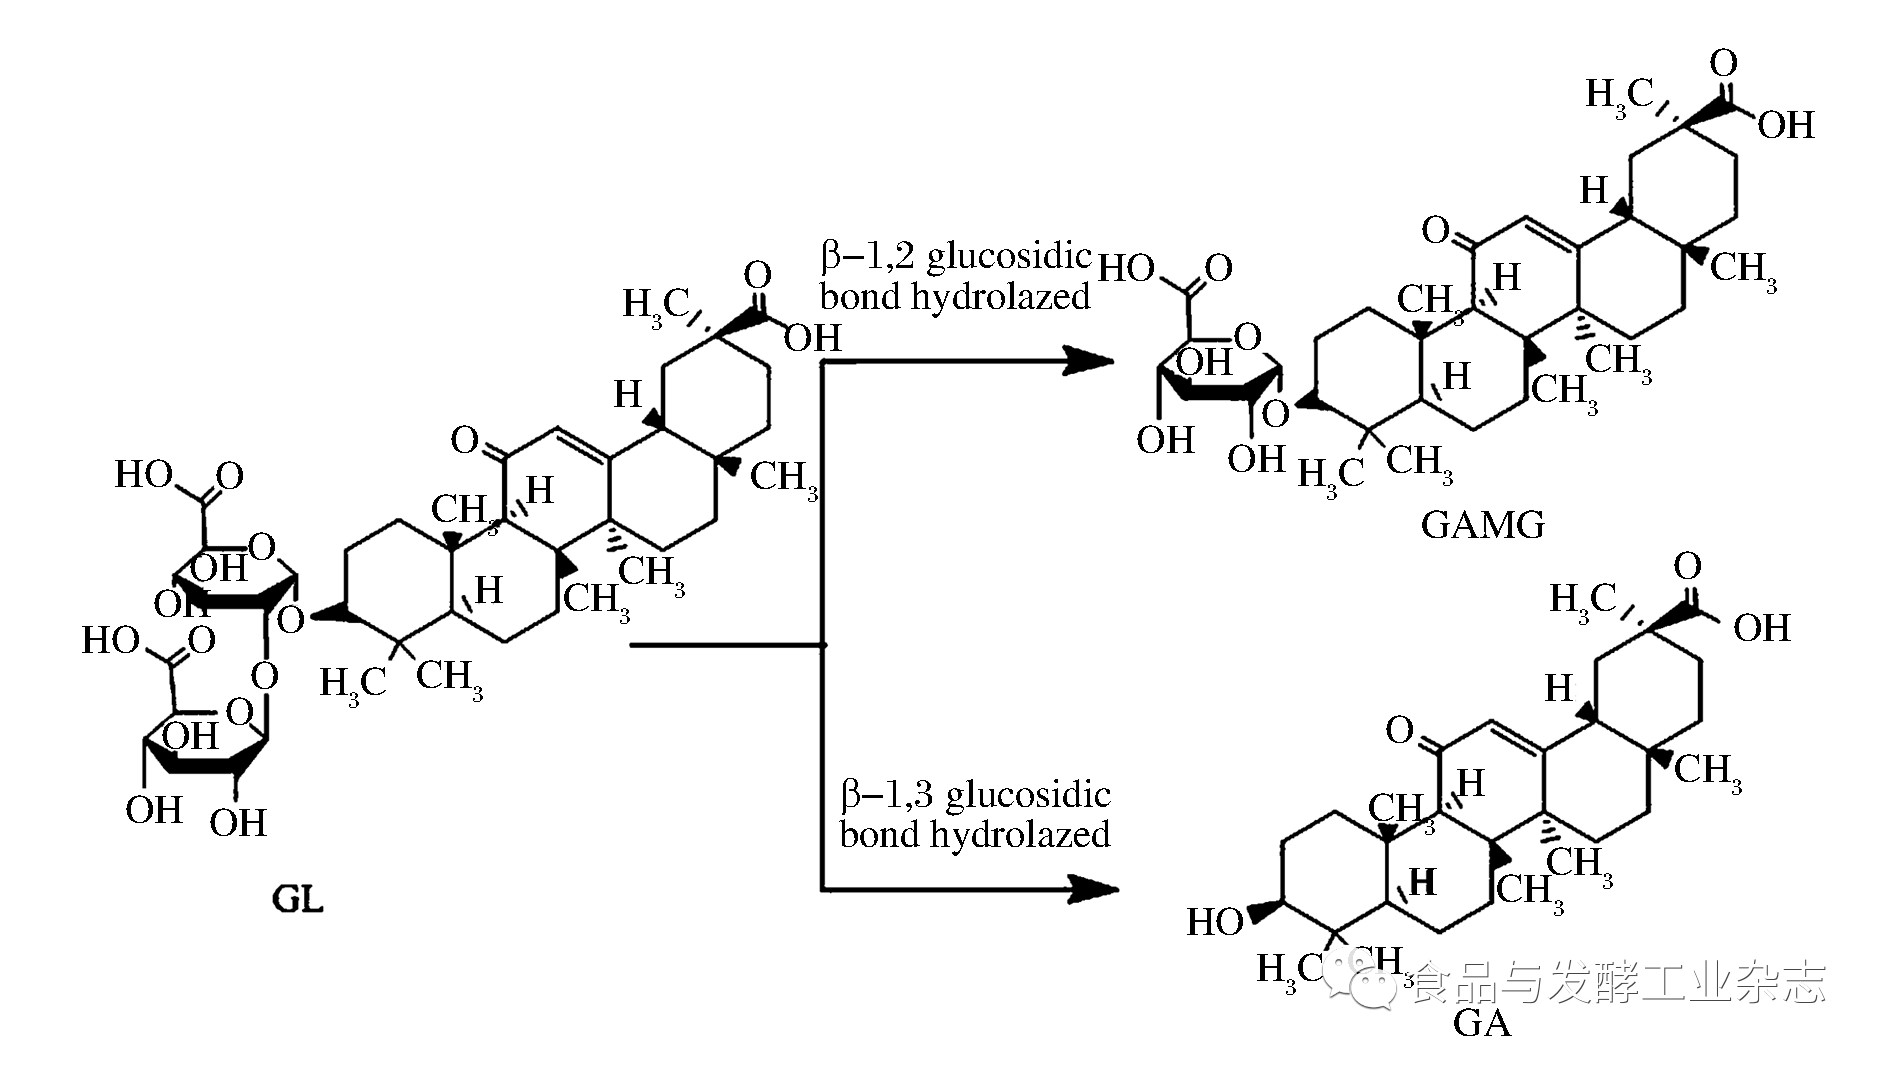 嘌呤和嘧啶核苷酸合成的异同_挂云帆